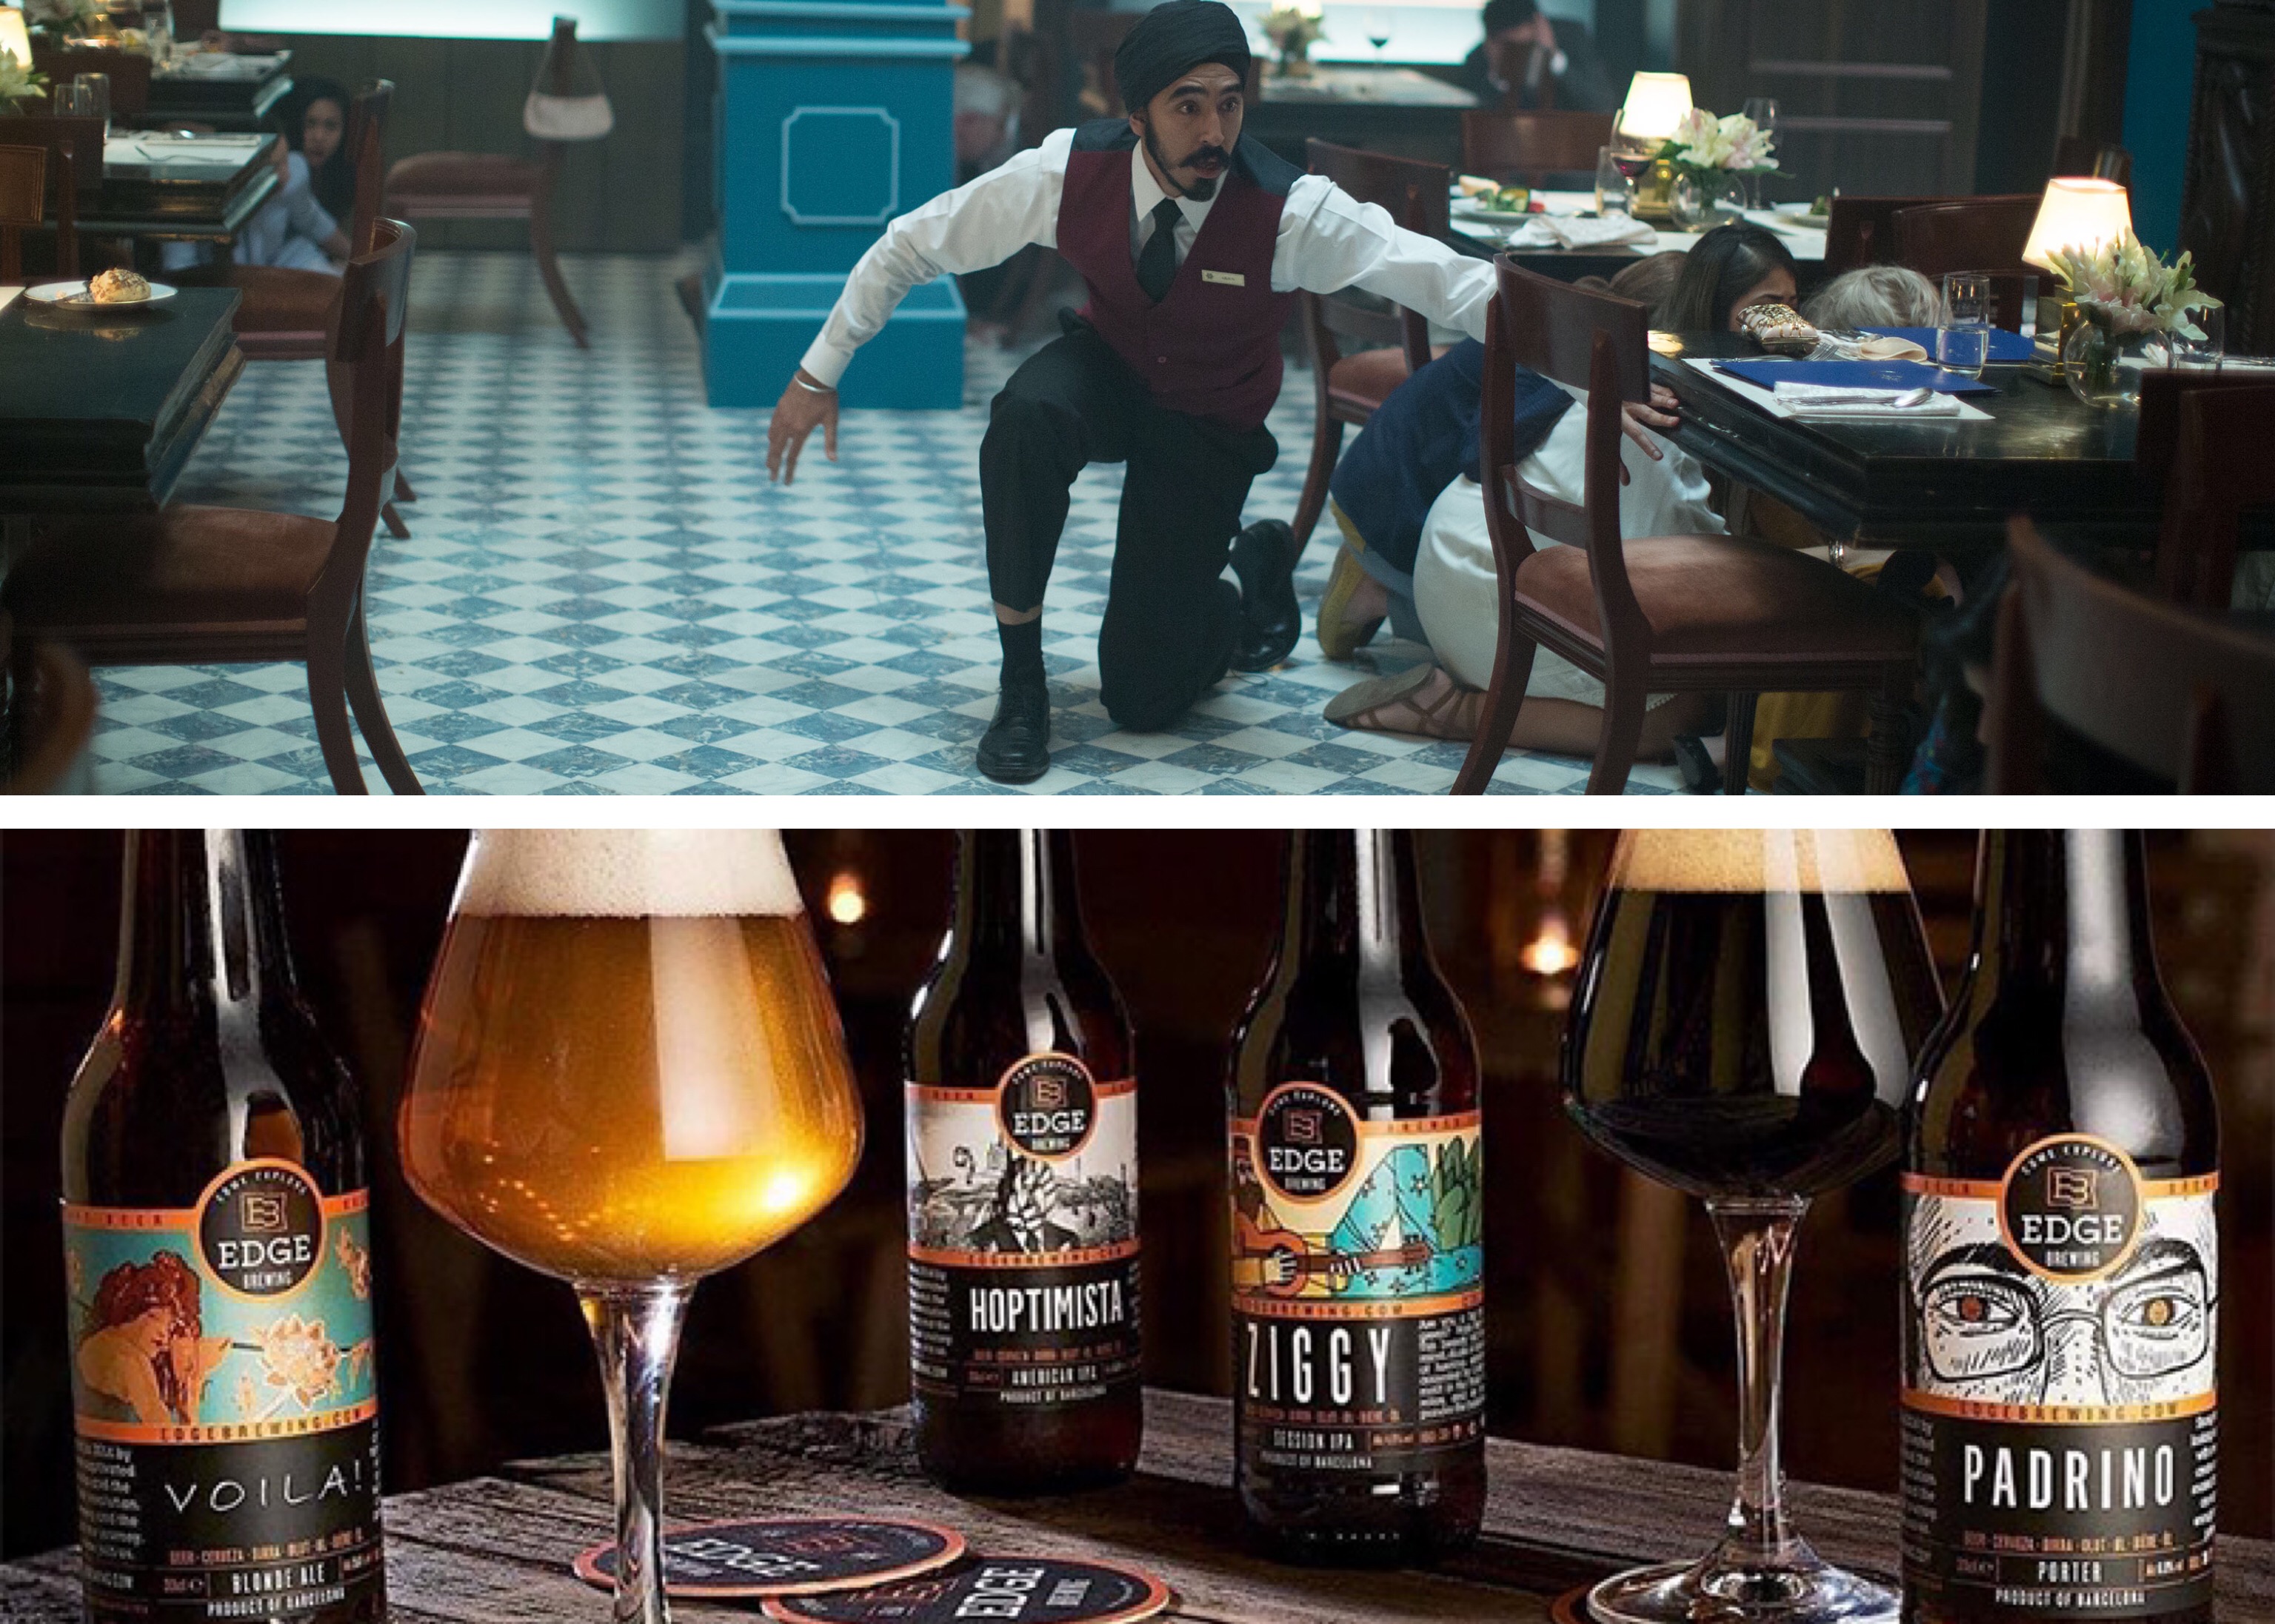 Filme "Atentado ao Hotel Taj Mahal" e cervejas da Edge Brewing são os destaques da coluna de cinema desta sexta-feira - Foto: Montagem com Divulgação/Imagem Filmes e Divulgação/Beer Press/Edge Brewing